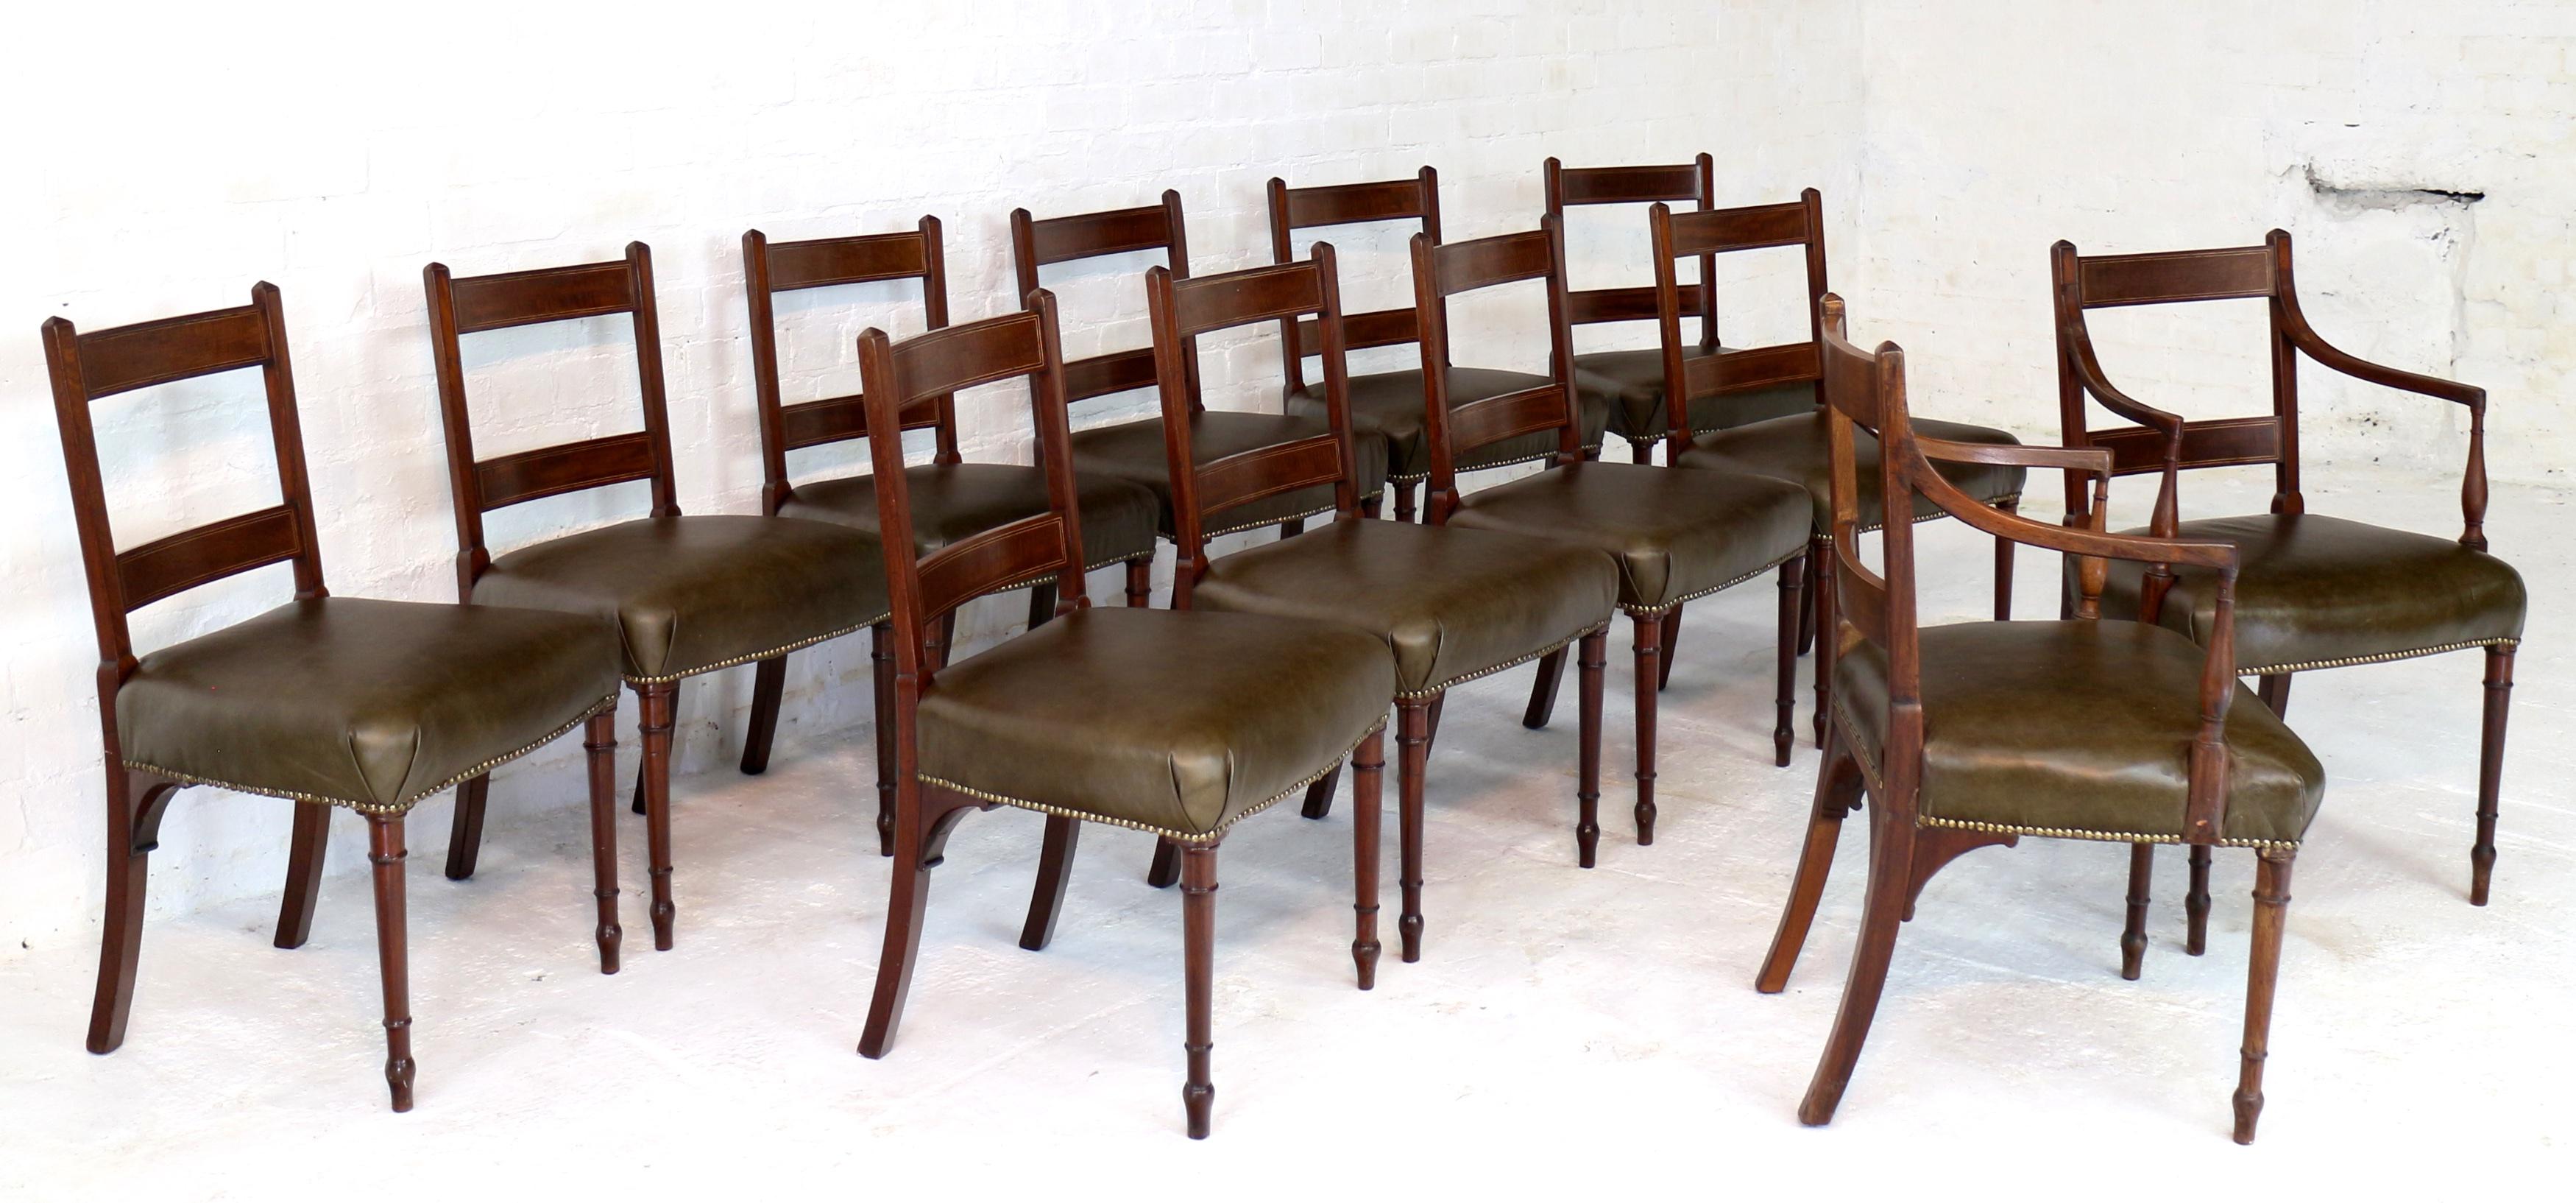 Ein seltener Satz von zwölf Mahagoni-Tischstühlen aus der Zeit von George III., die Gillows of Lancaster zugeschrieben werden und auf ca. 1790 datiert sind. Bestehend aus zwei Schnitzersesseln und zehn Beistellstühlen, die Rückenlehnen mit